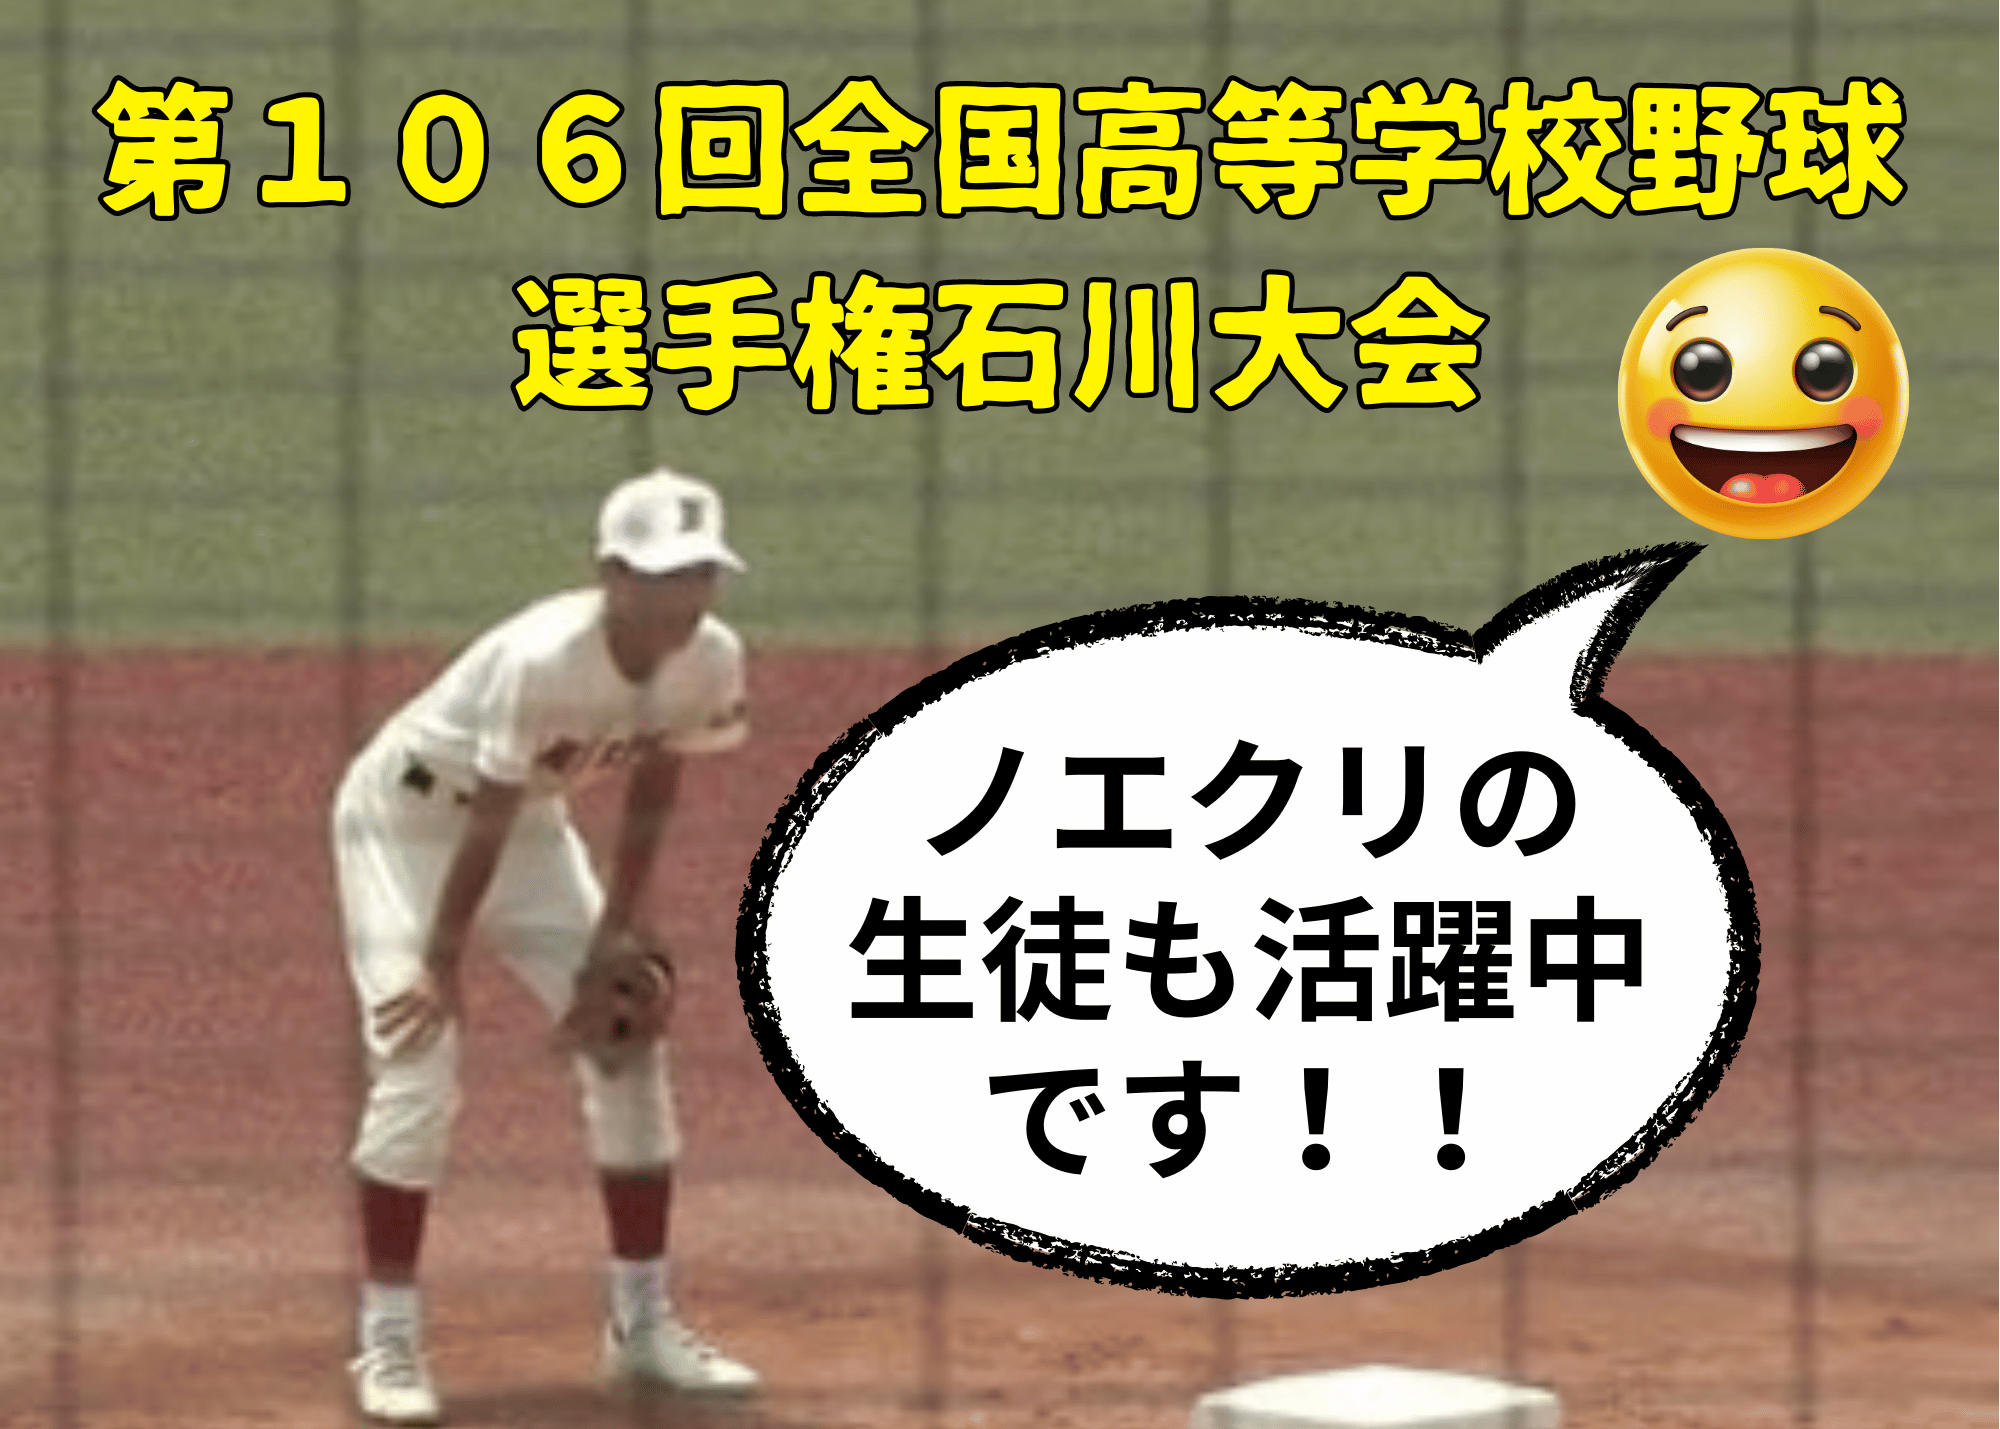 第106回全国高等学校野球選手権石川大会で、ノエクリの生徒も活躍中です！